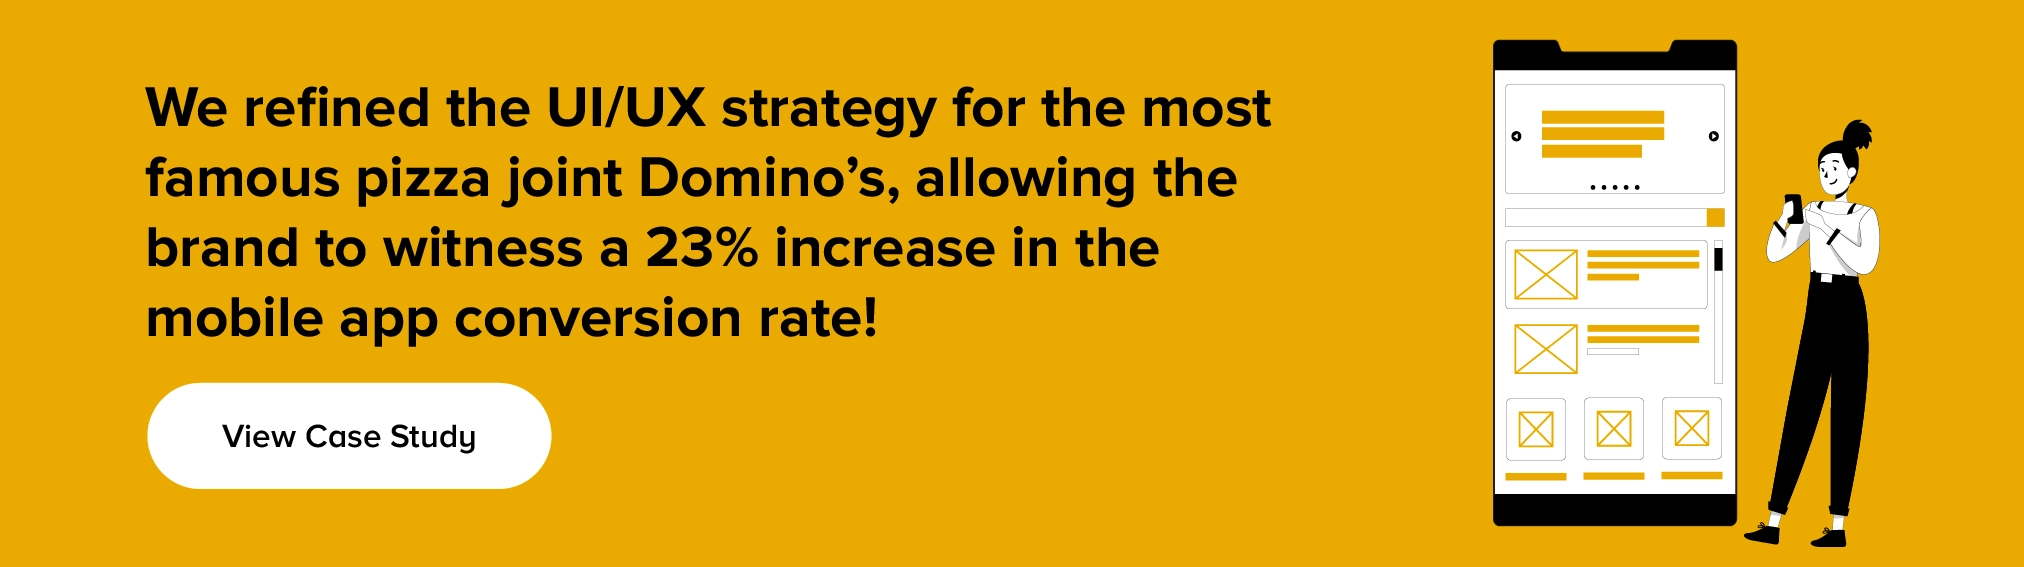 ピザ店 Domino's の UI/UX 戦略をどのように洗練させたかをご覧ください。